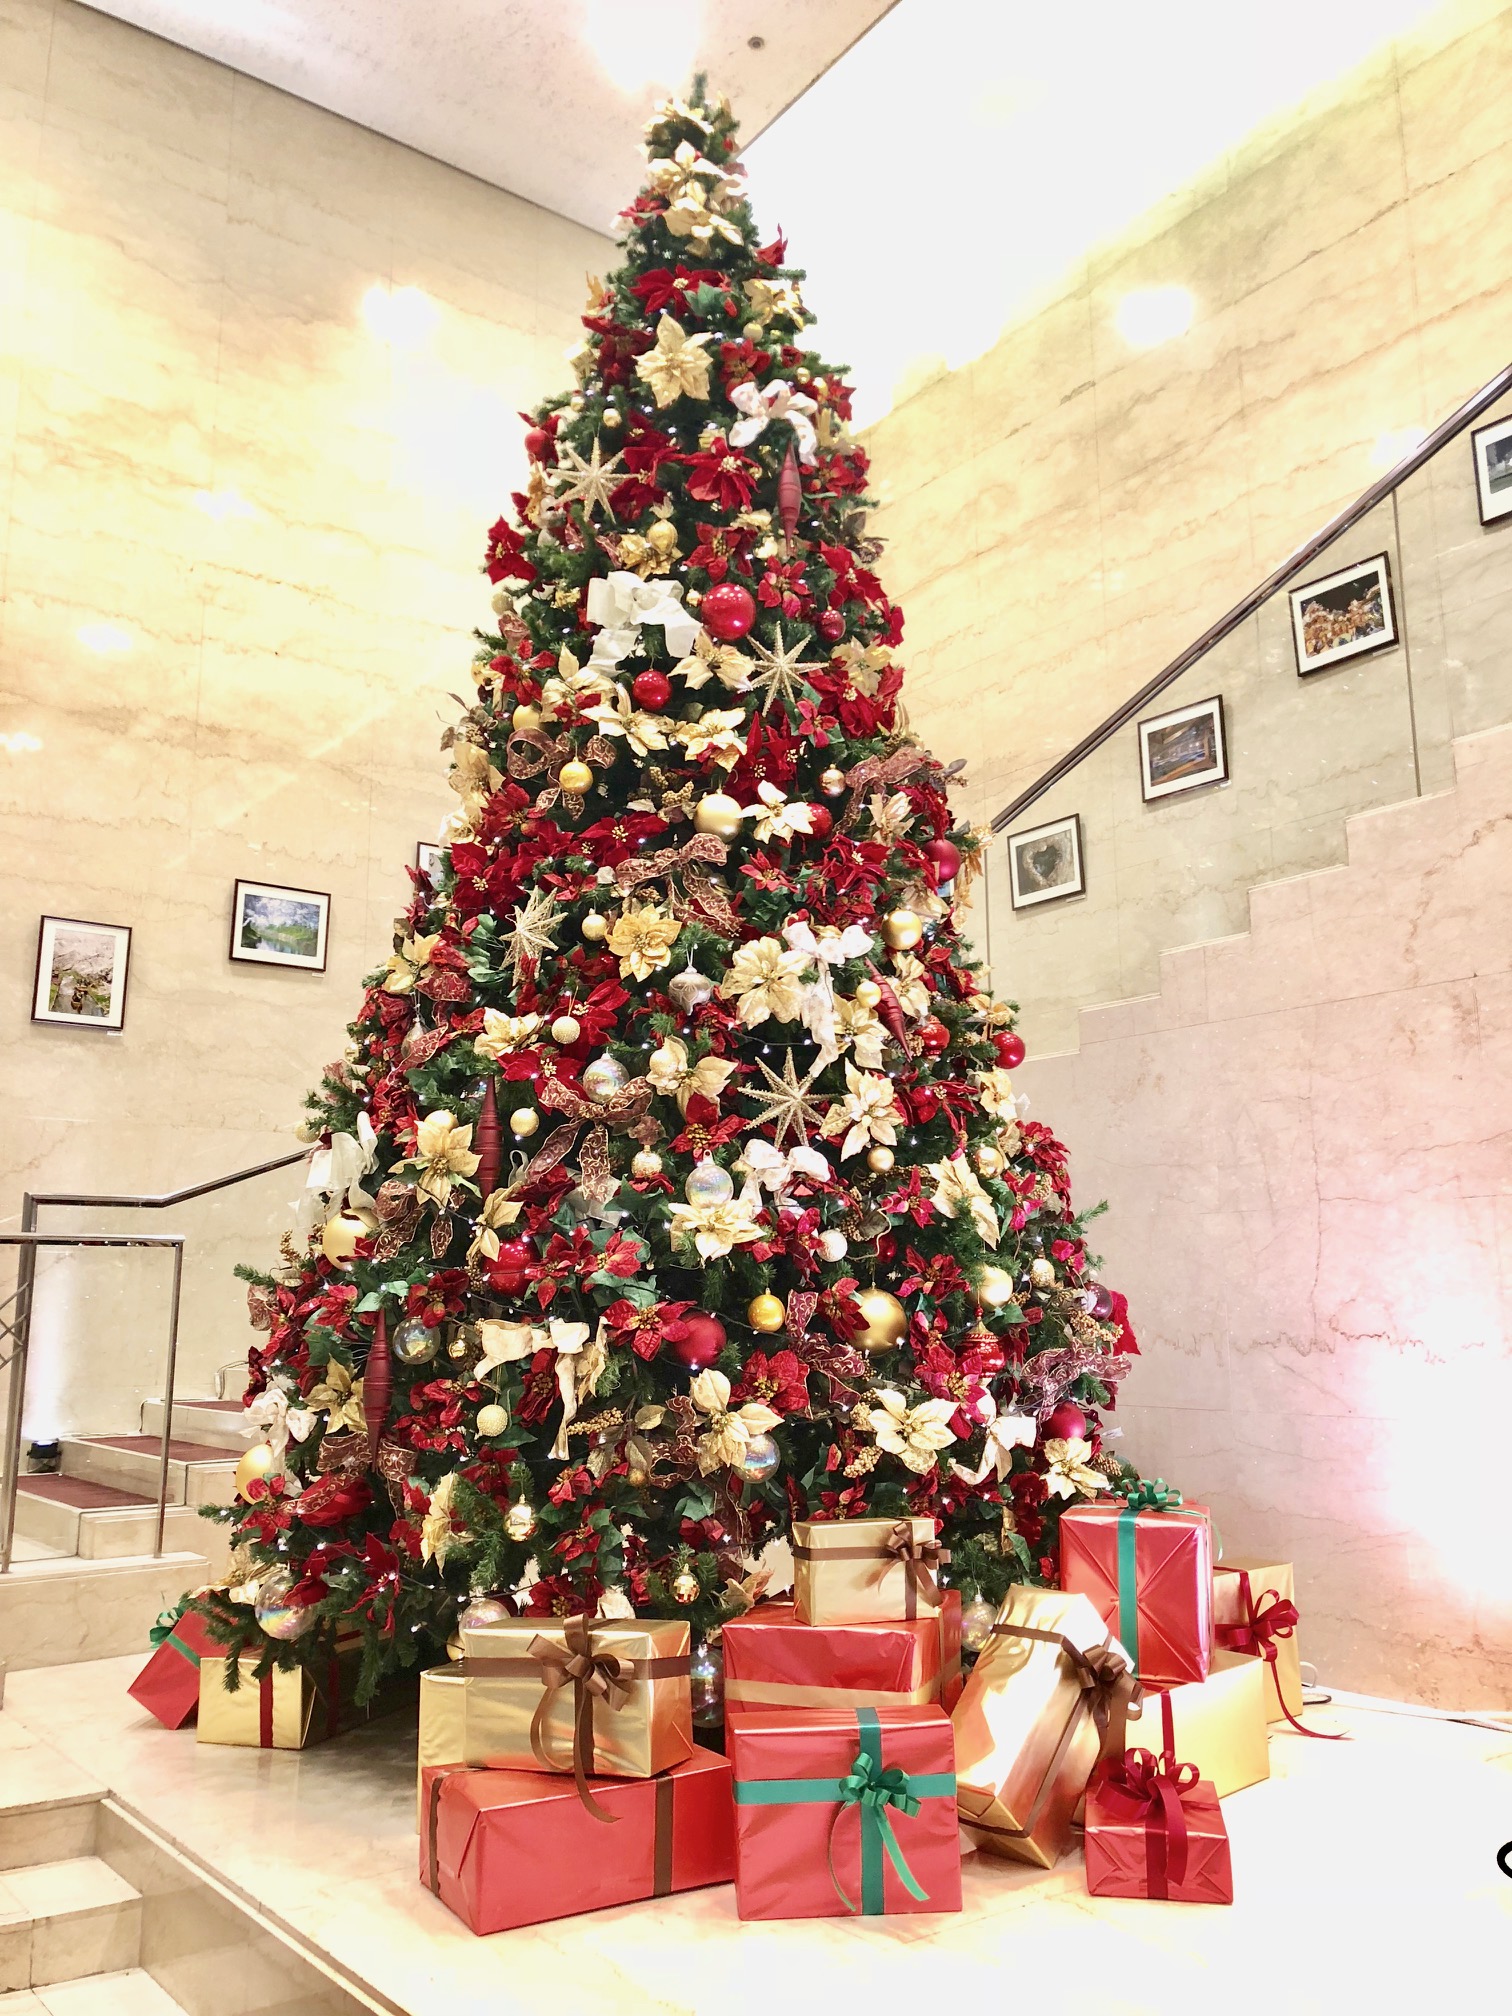 川越プリンスホテル 華やかさと温かさを併せ持つイギリスのクリスマスをテーマに ホテルロビーに高さ約5mのクリスマスツリー が登場 株式会社プリンスホテルのプレスリリース